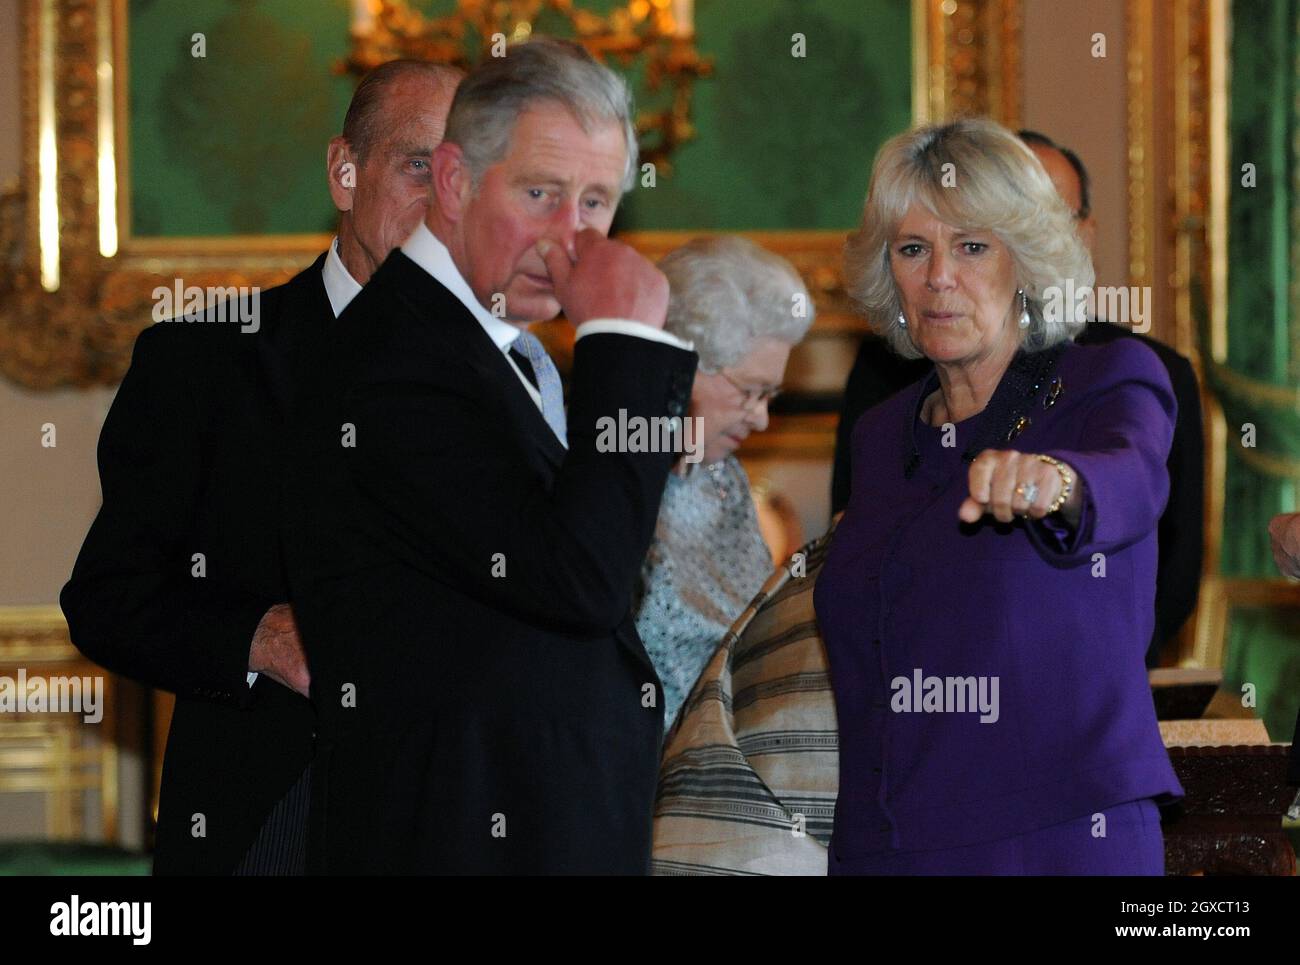 Le Prince Charles, Prince de Galles, Camilla, Duchesse de Cornouailles et le Prince Philip, Duc d'Édimbourg, voient une exposition d'objets dans la salle de dessin blanc du château de Windsor au début d'une visite d'État par le Président de l'Inde, Pratibha Patil, le 27 octobre 2009. Banque D'Images